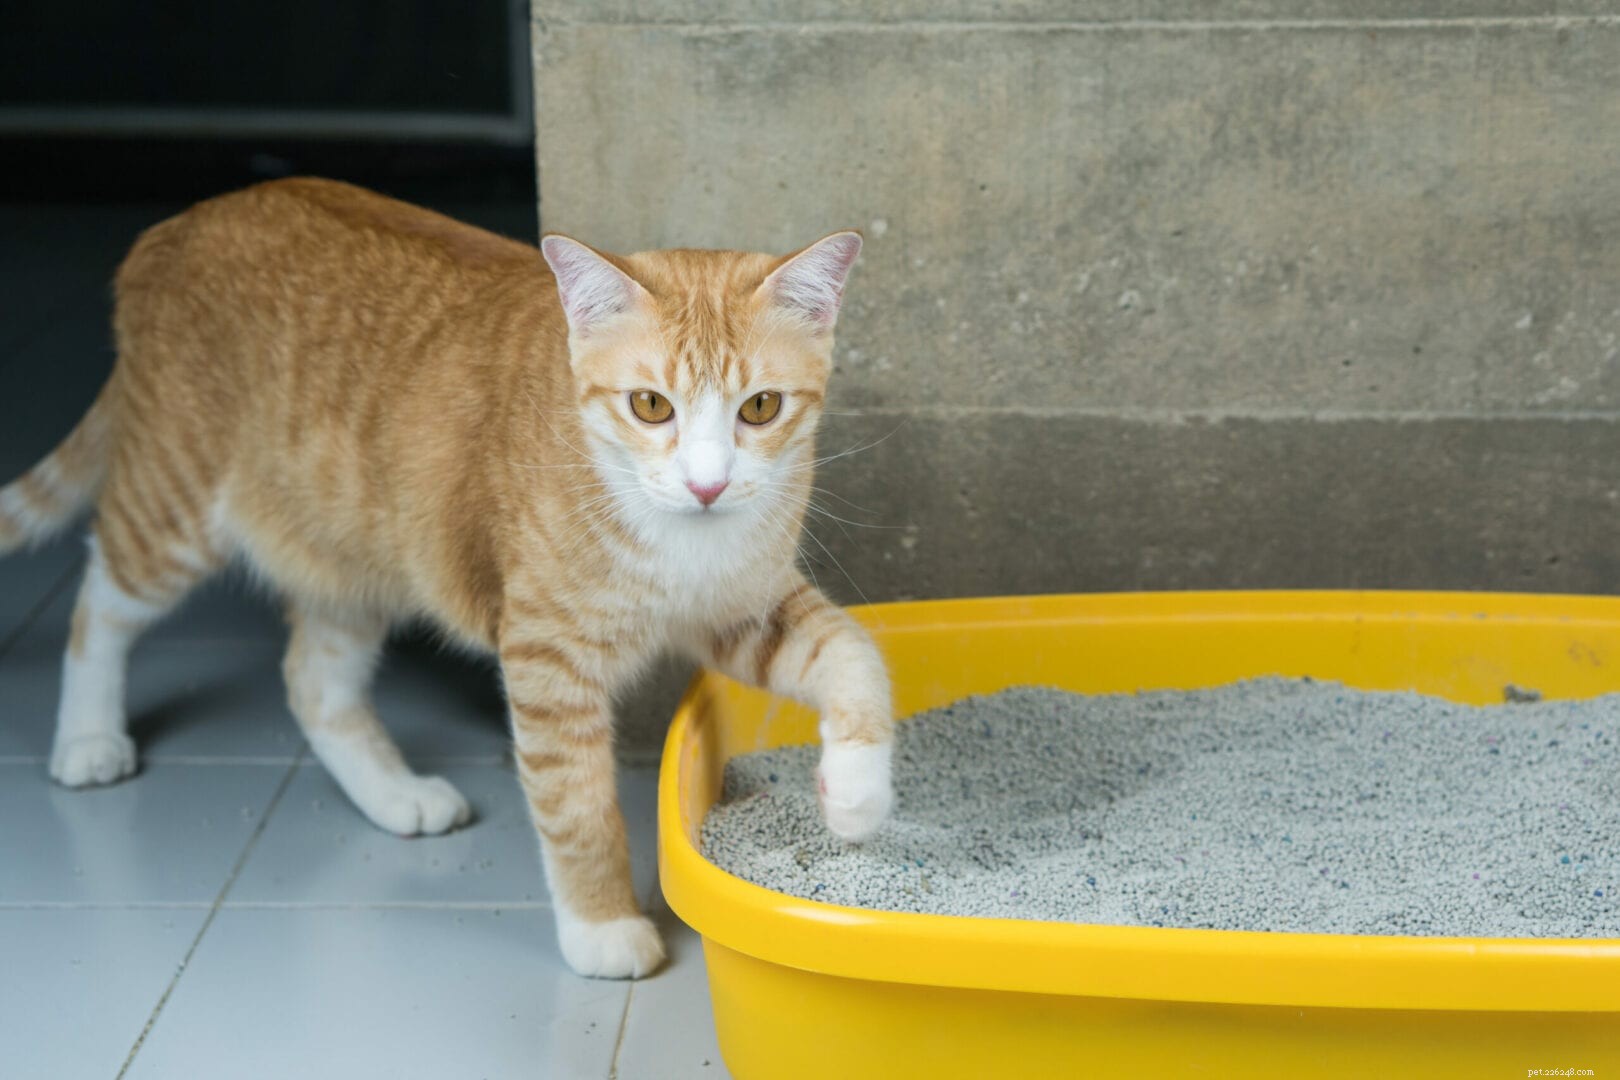 Comment les chats savent-ils naturellement utiliser le bac à litière ?